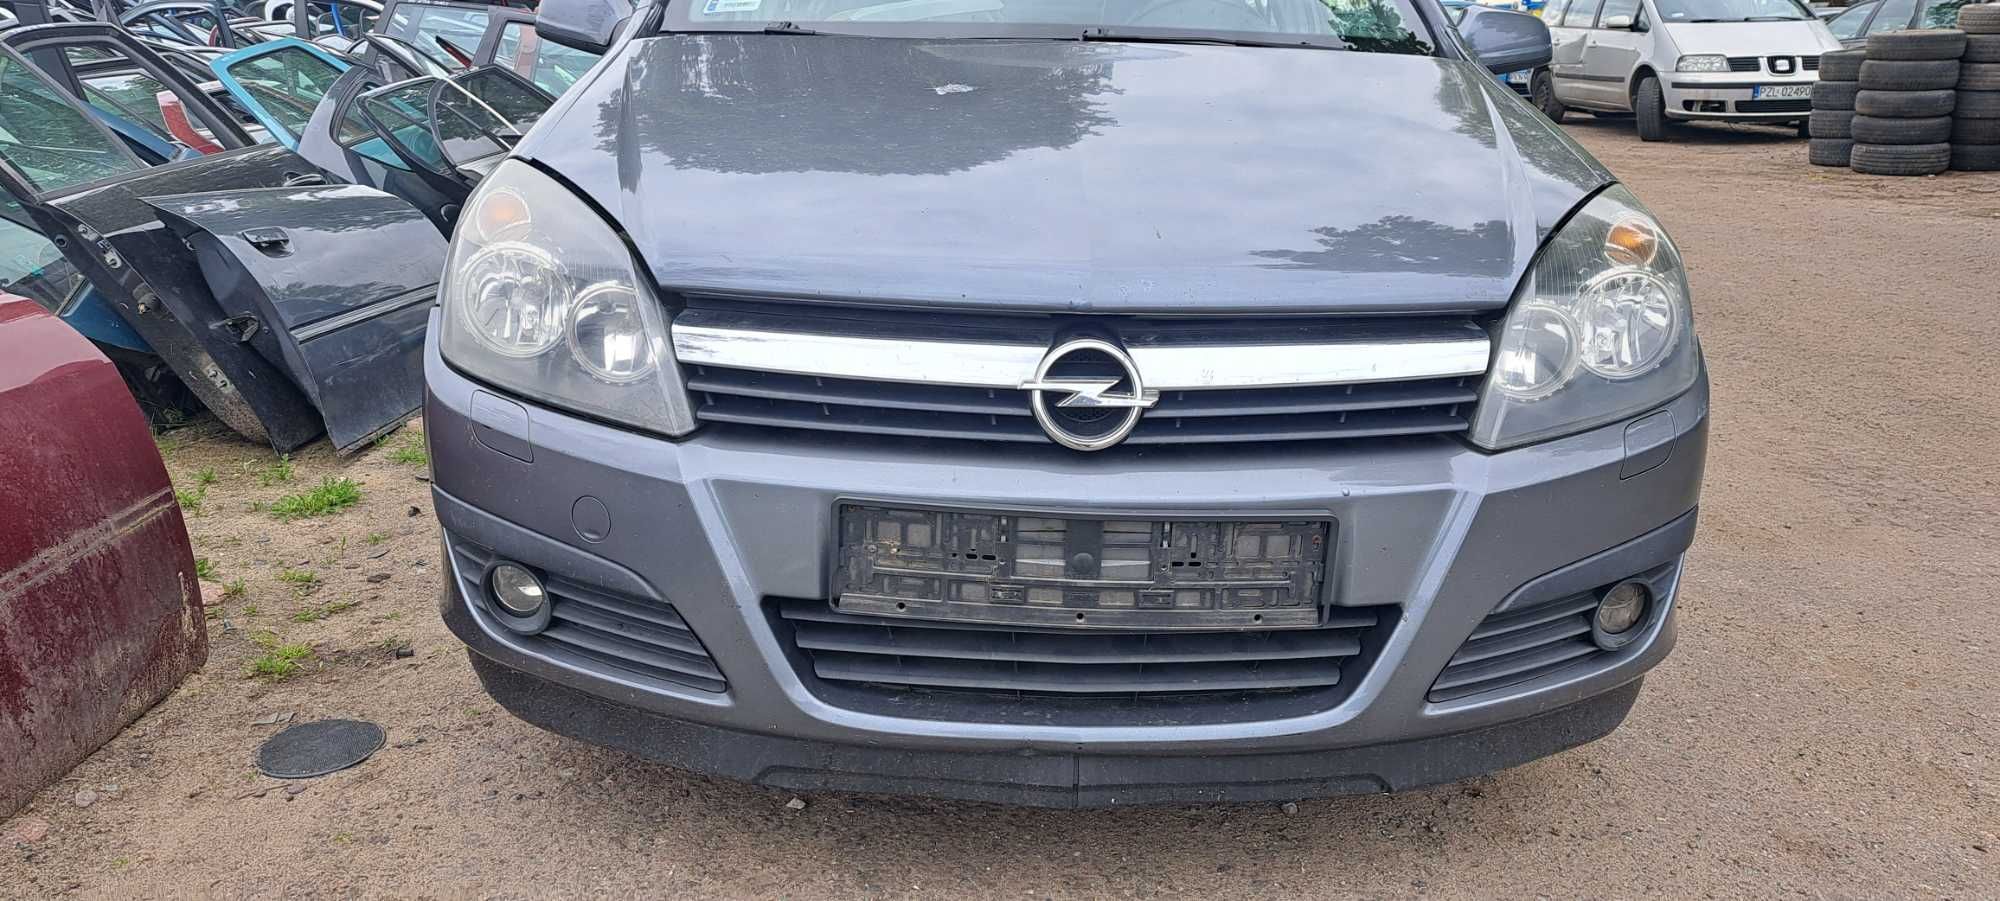 Belka pod zderzak przedni Opel Astra H